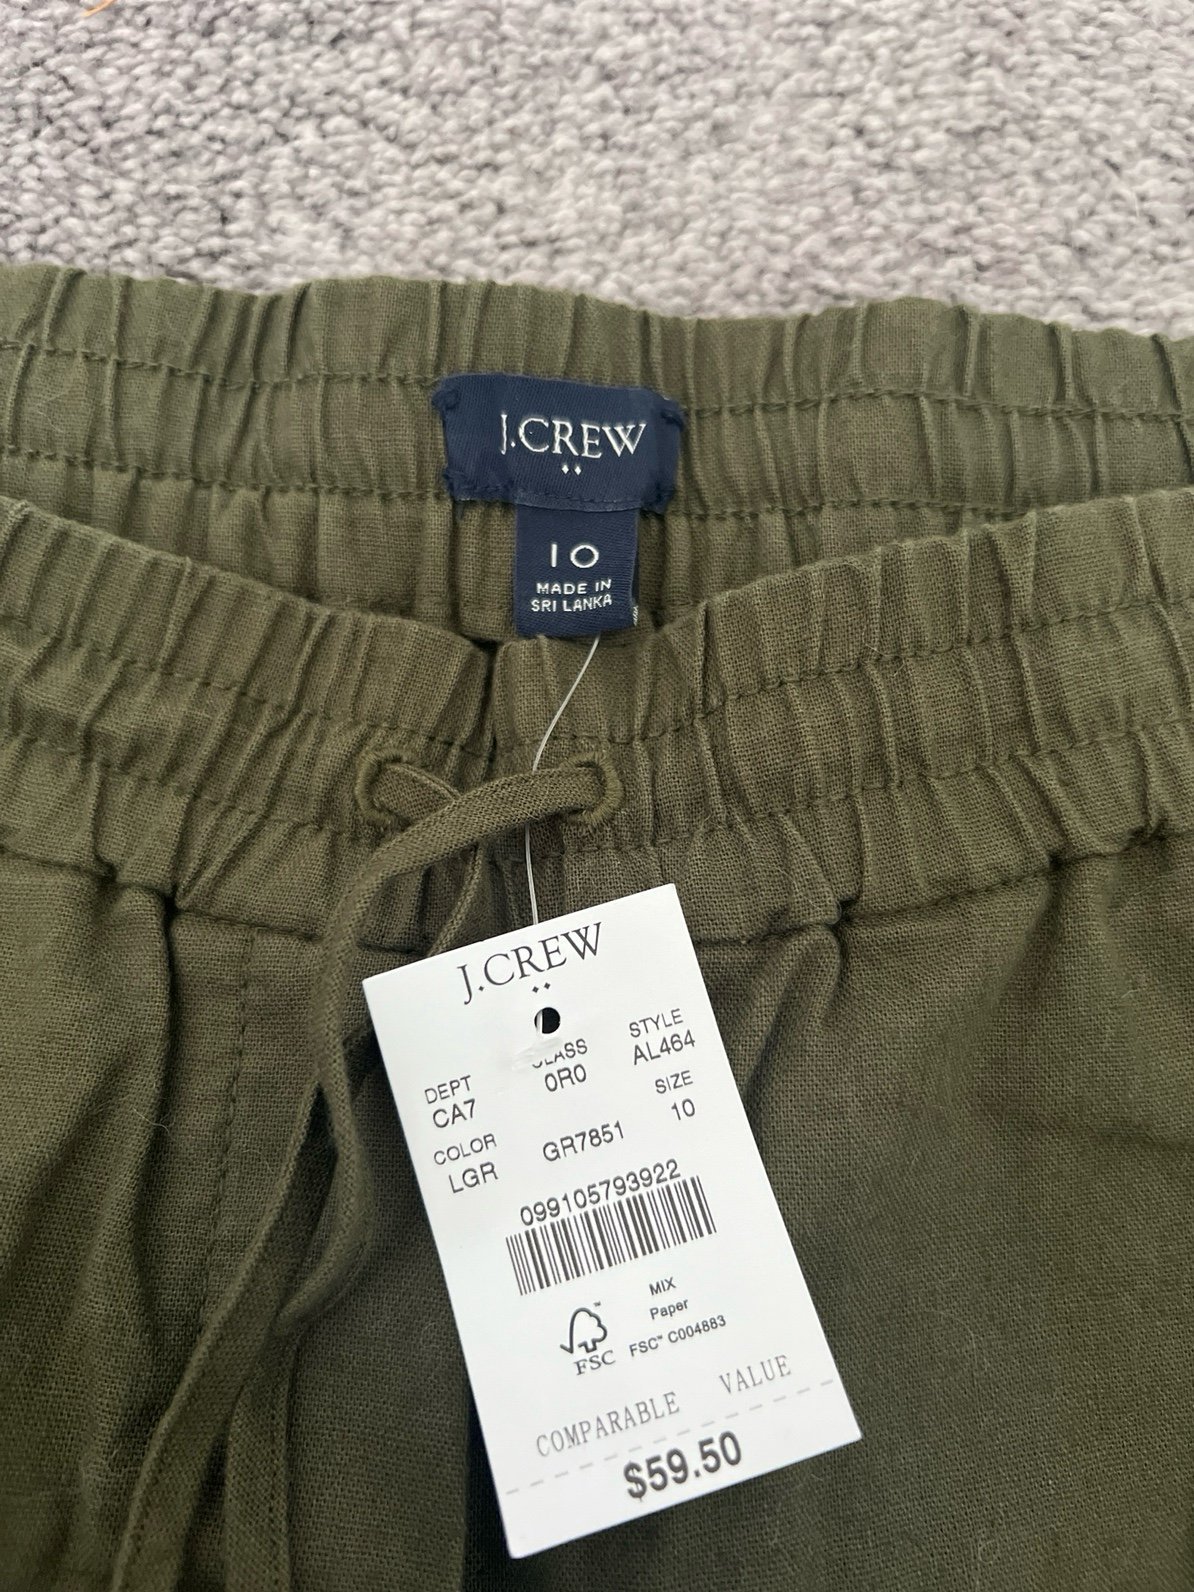 Cheap J. Crew Green Linen Pants ftFil9Ves Online Shop